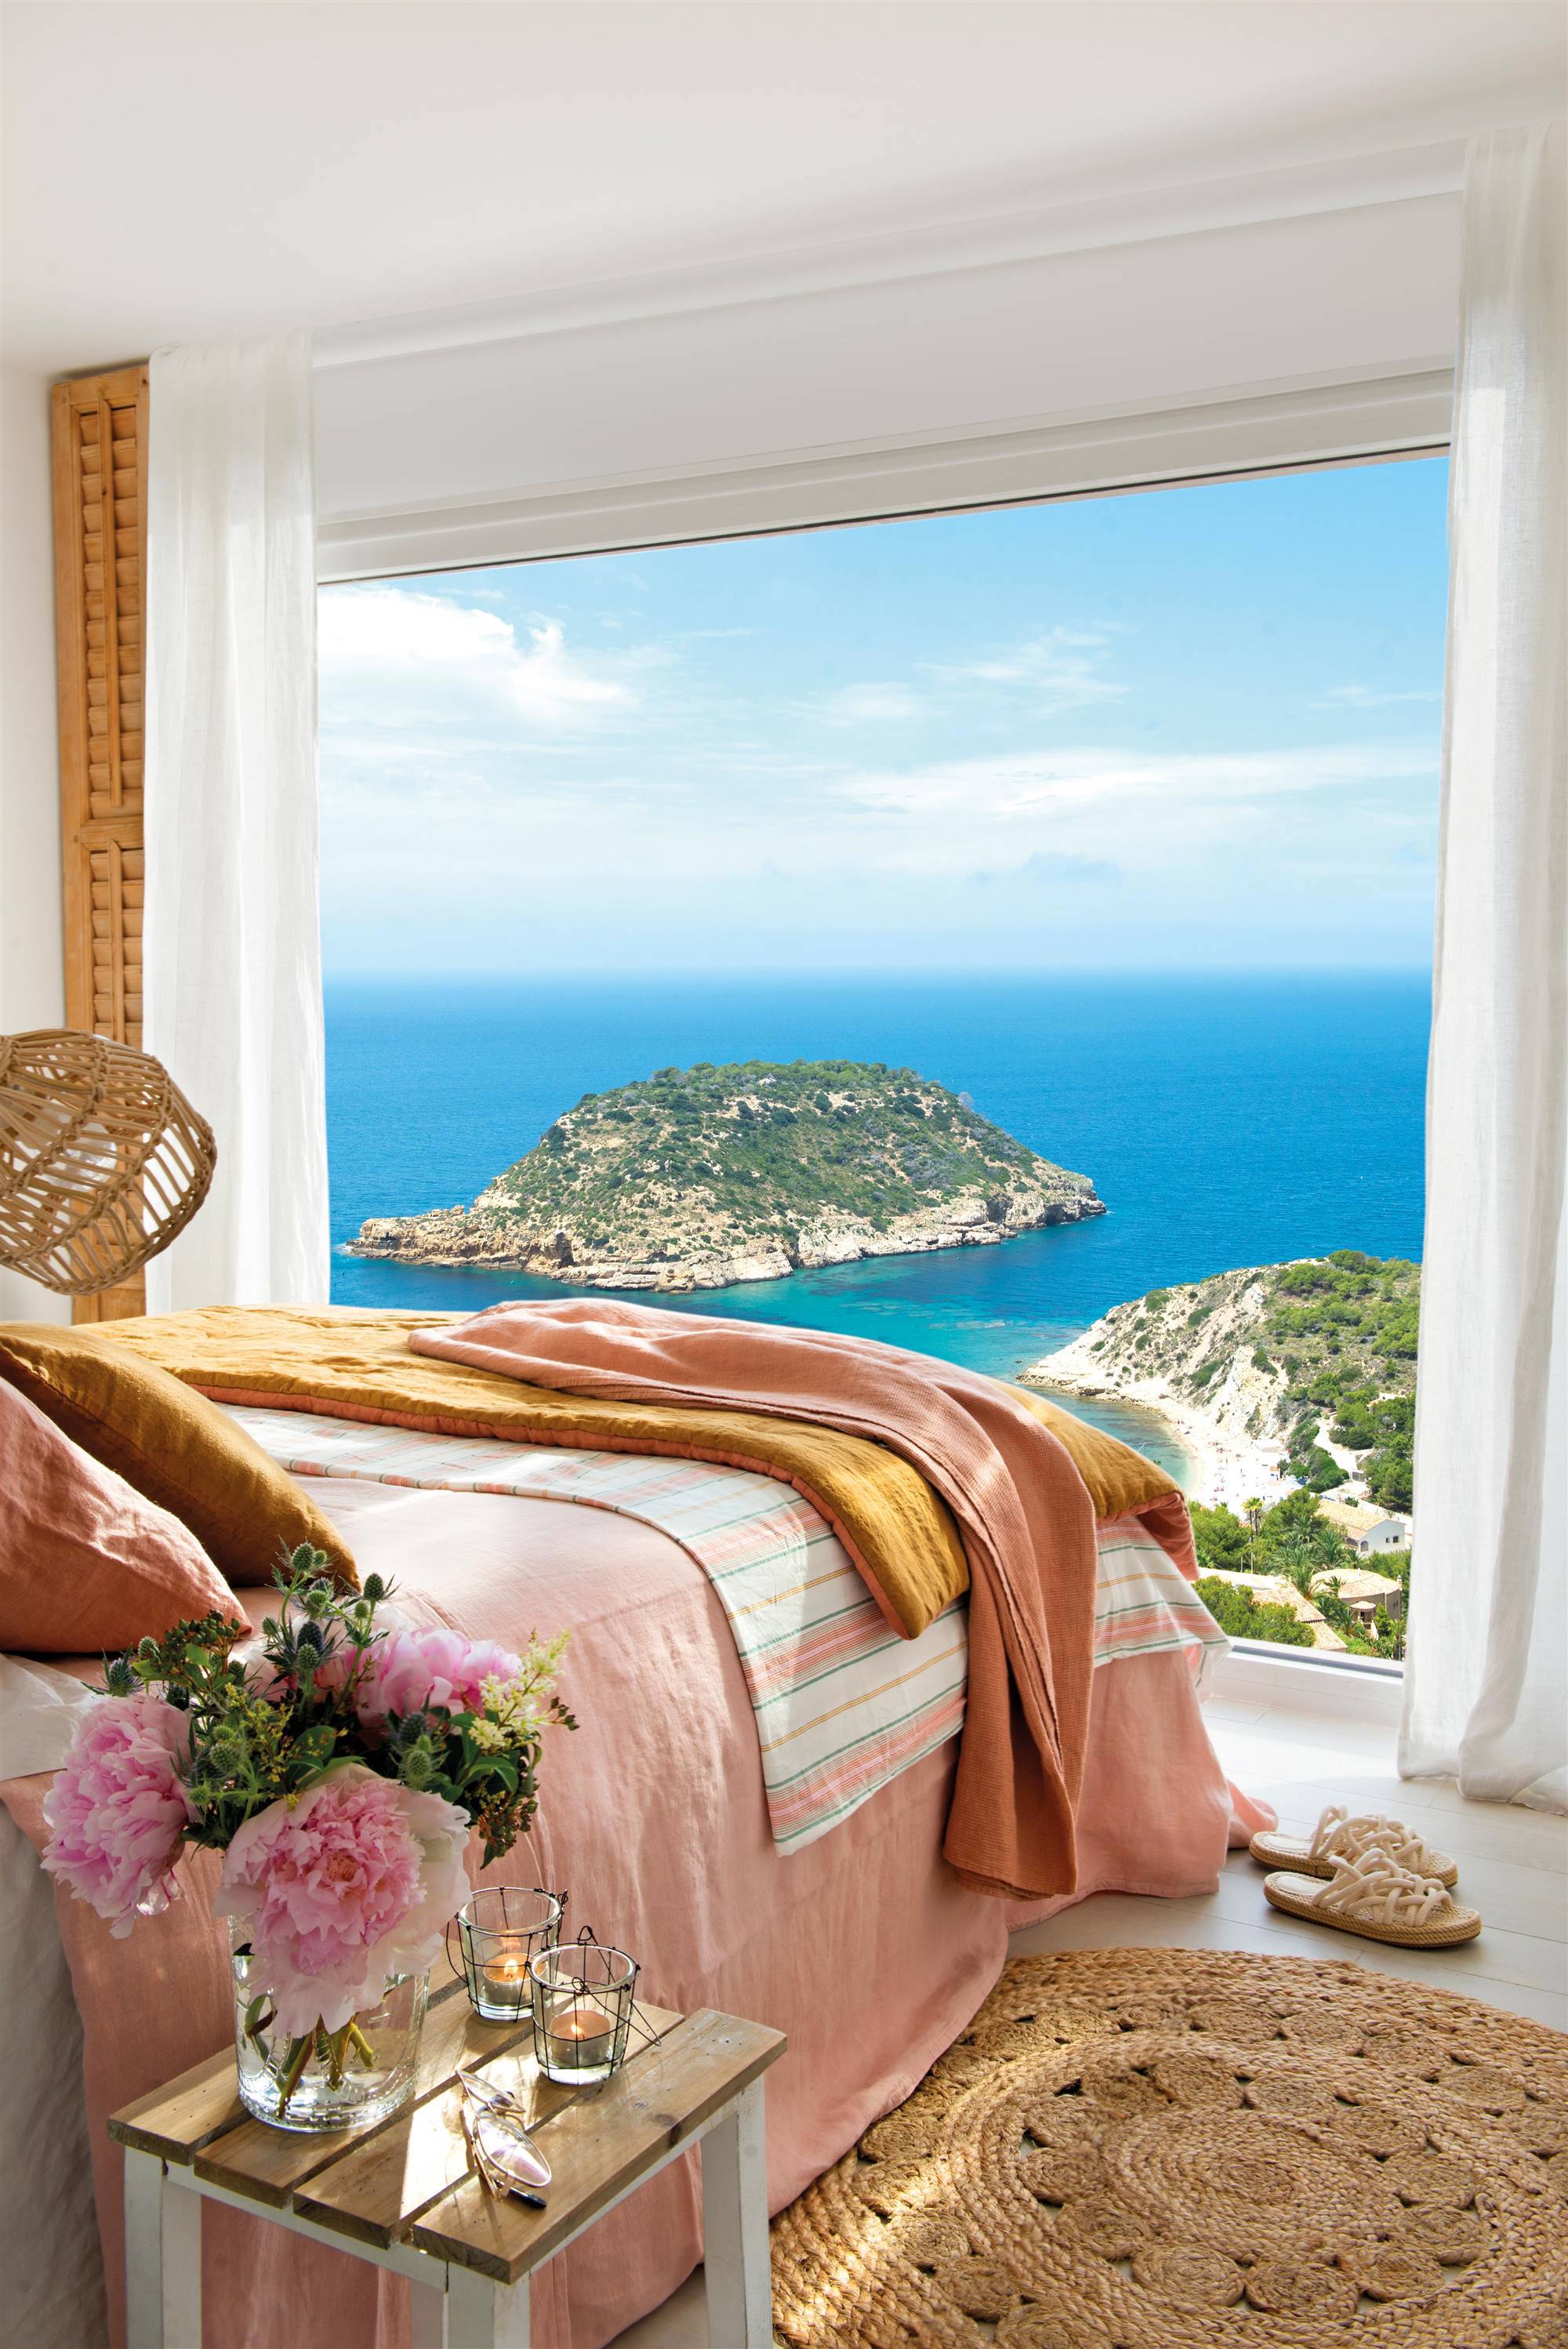 Dormitorio con ventanal y vistas al mar frente a la cama.